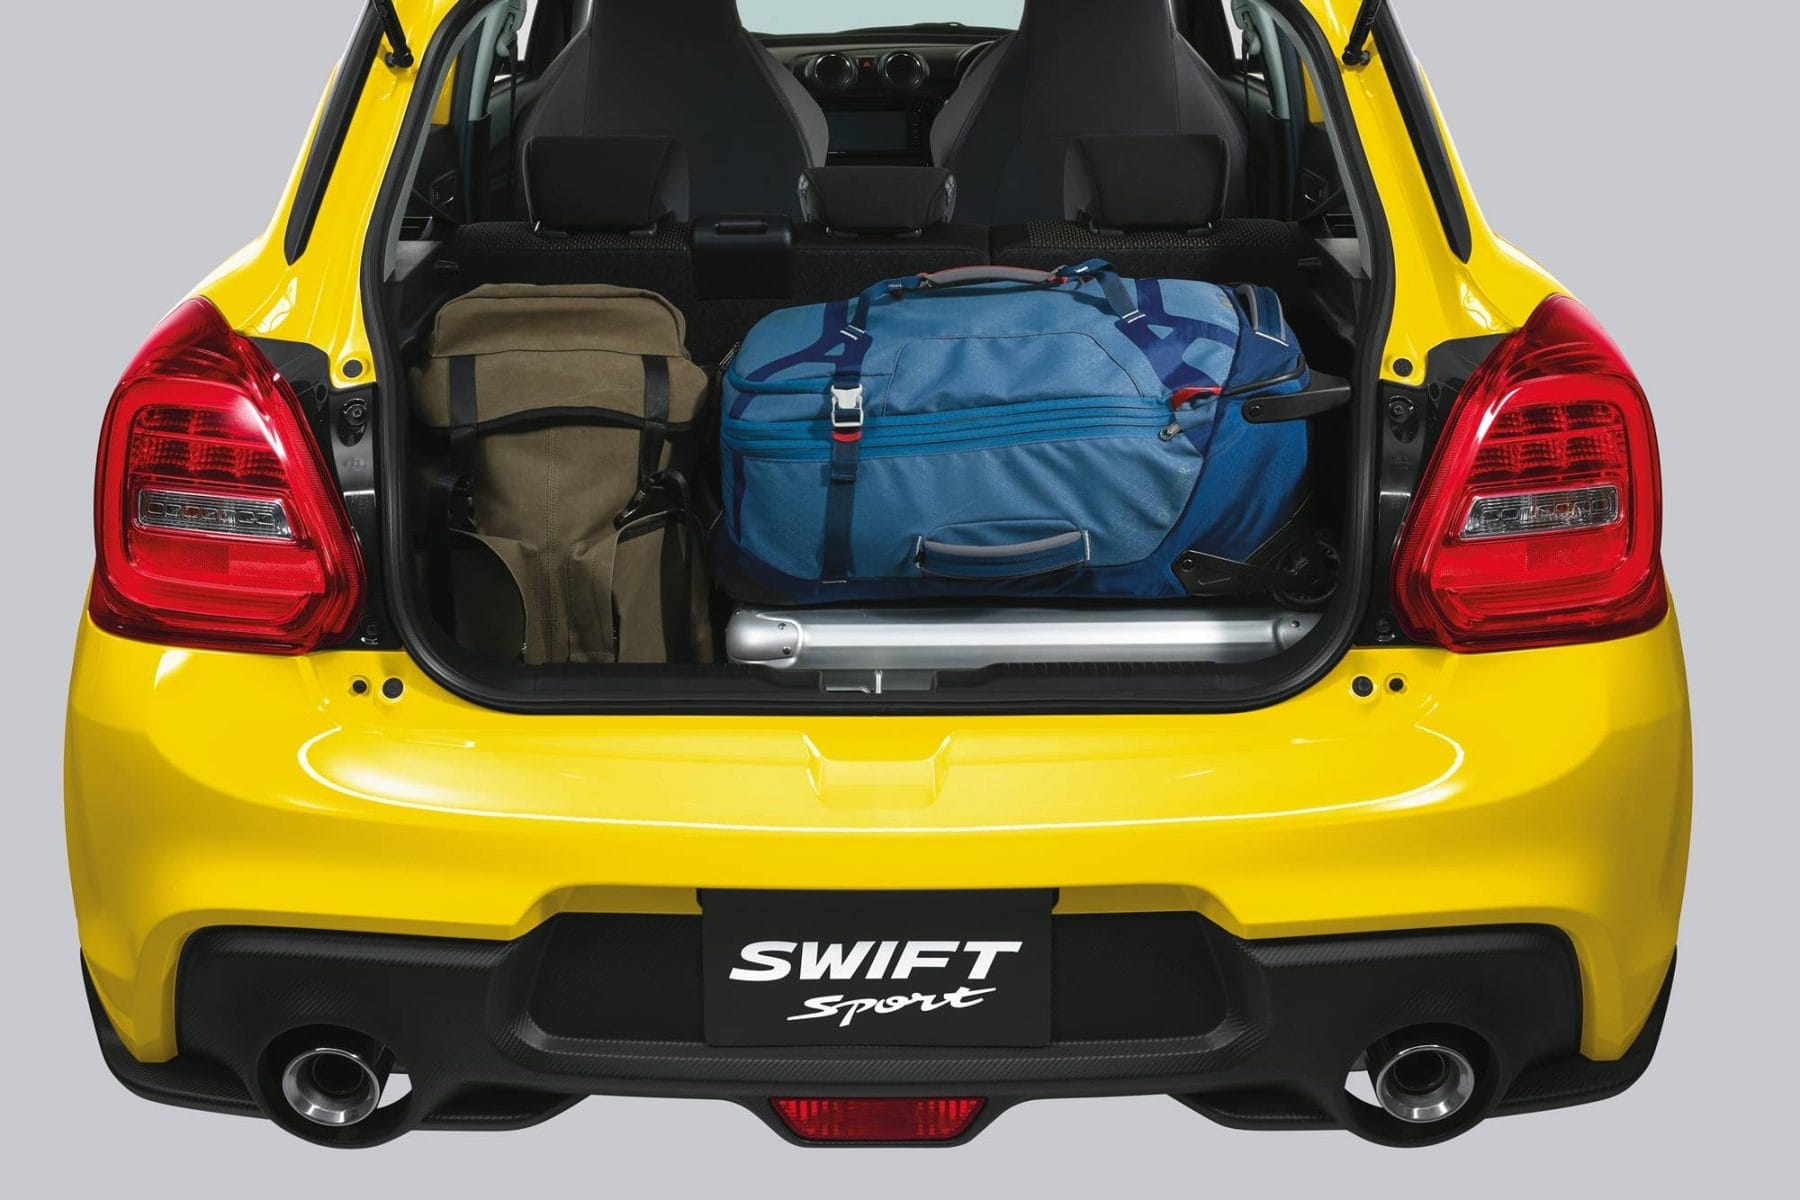 2018 Suzuki Swift Sport, interior.